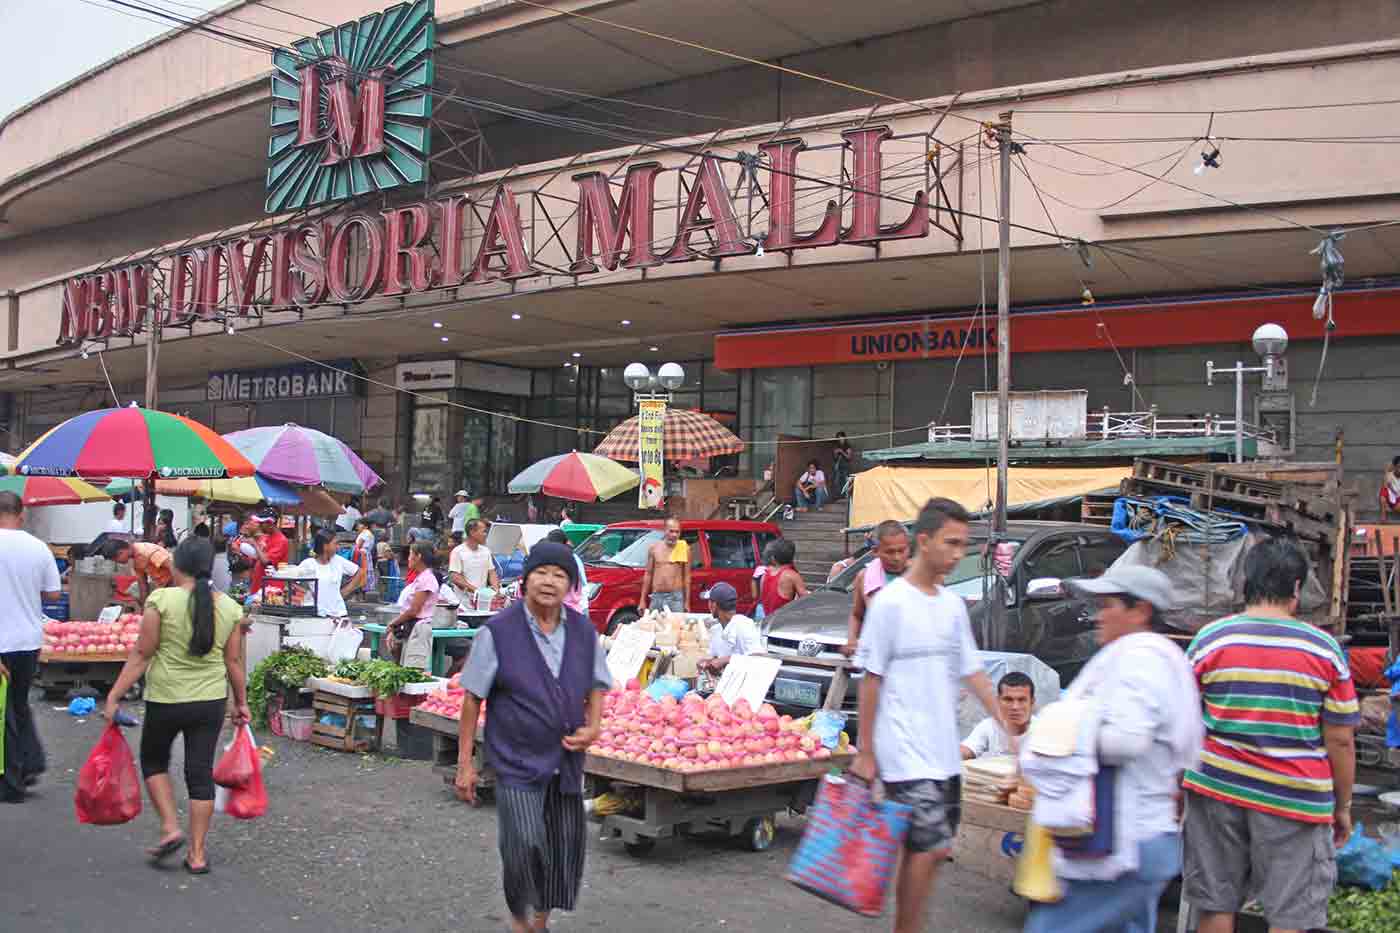 Divisoria Market